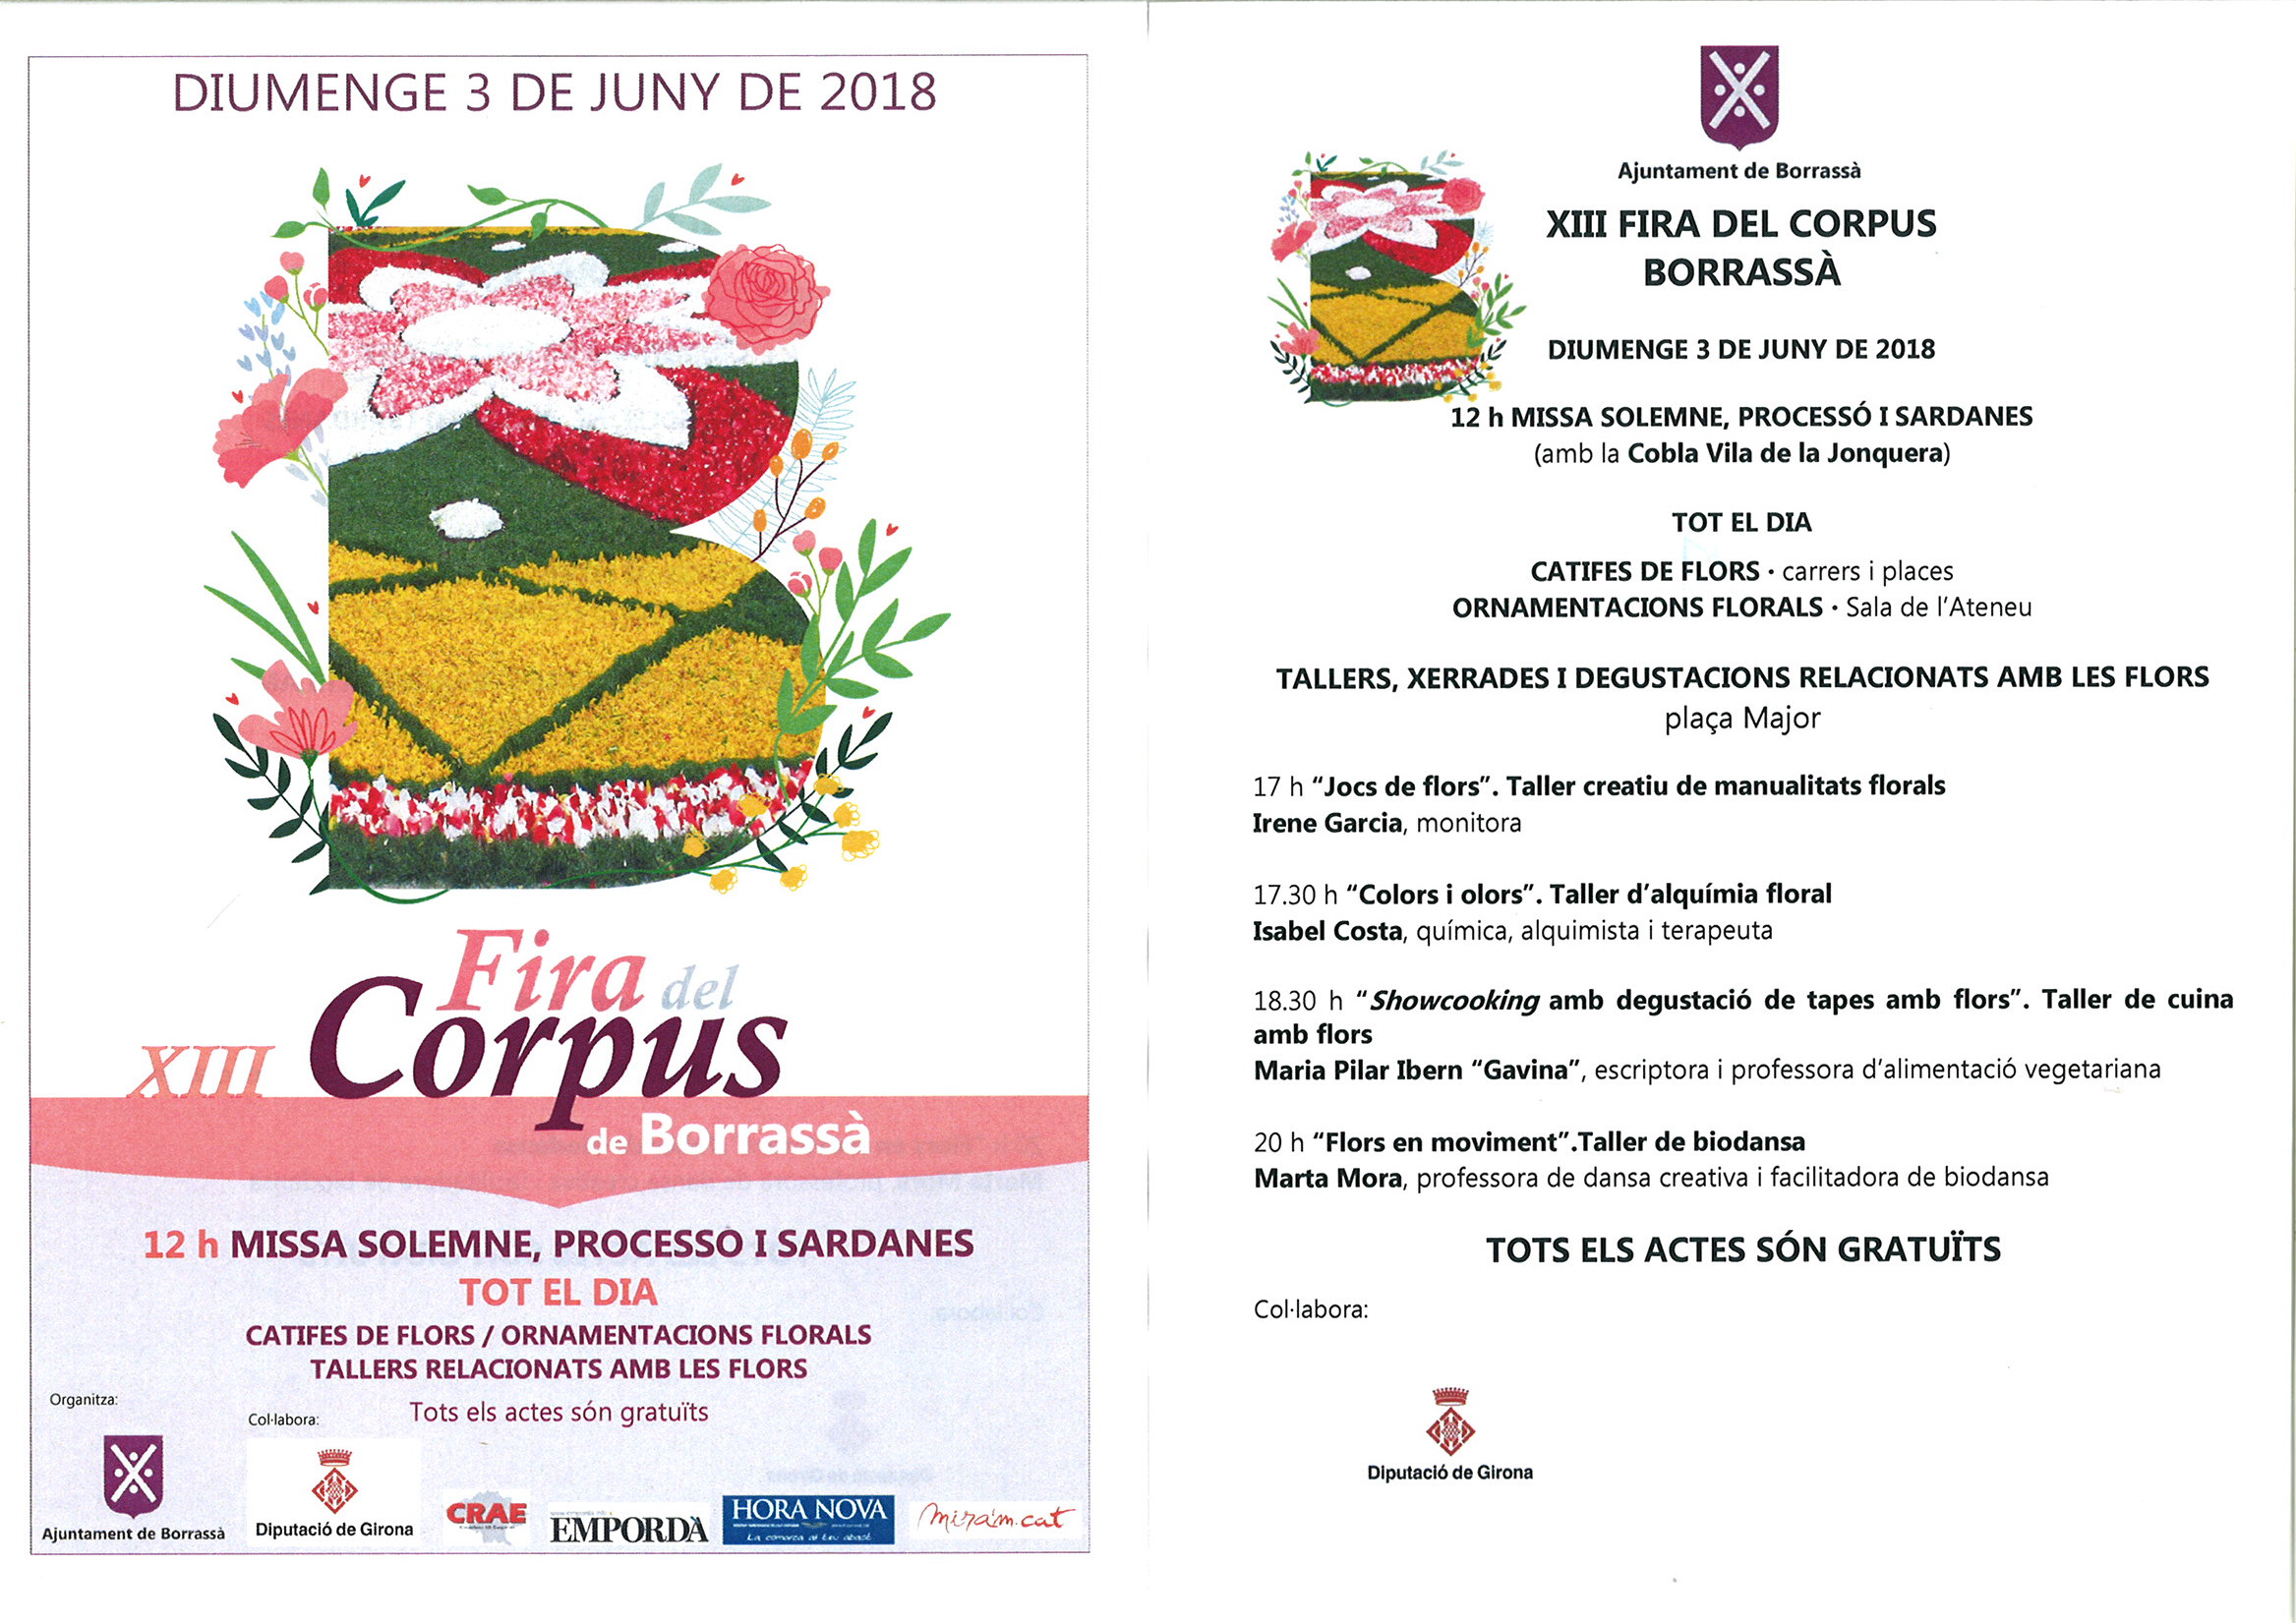 Programa d'actes de la XIII Fira del Corpus, que es farà el diumenge 3 de juny.